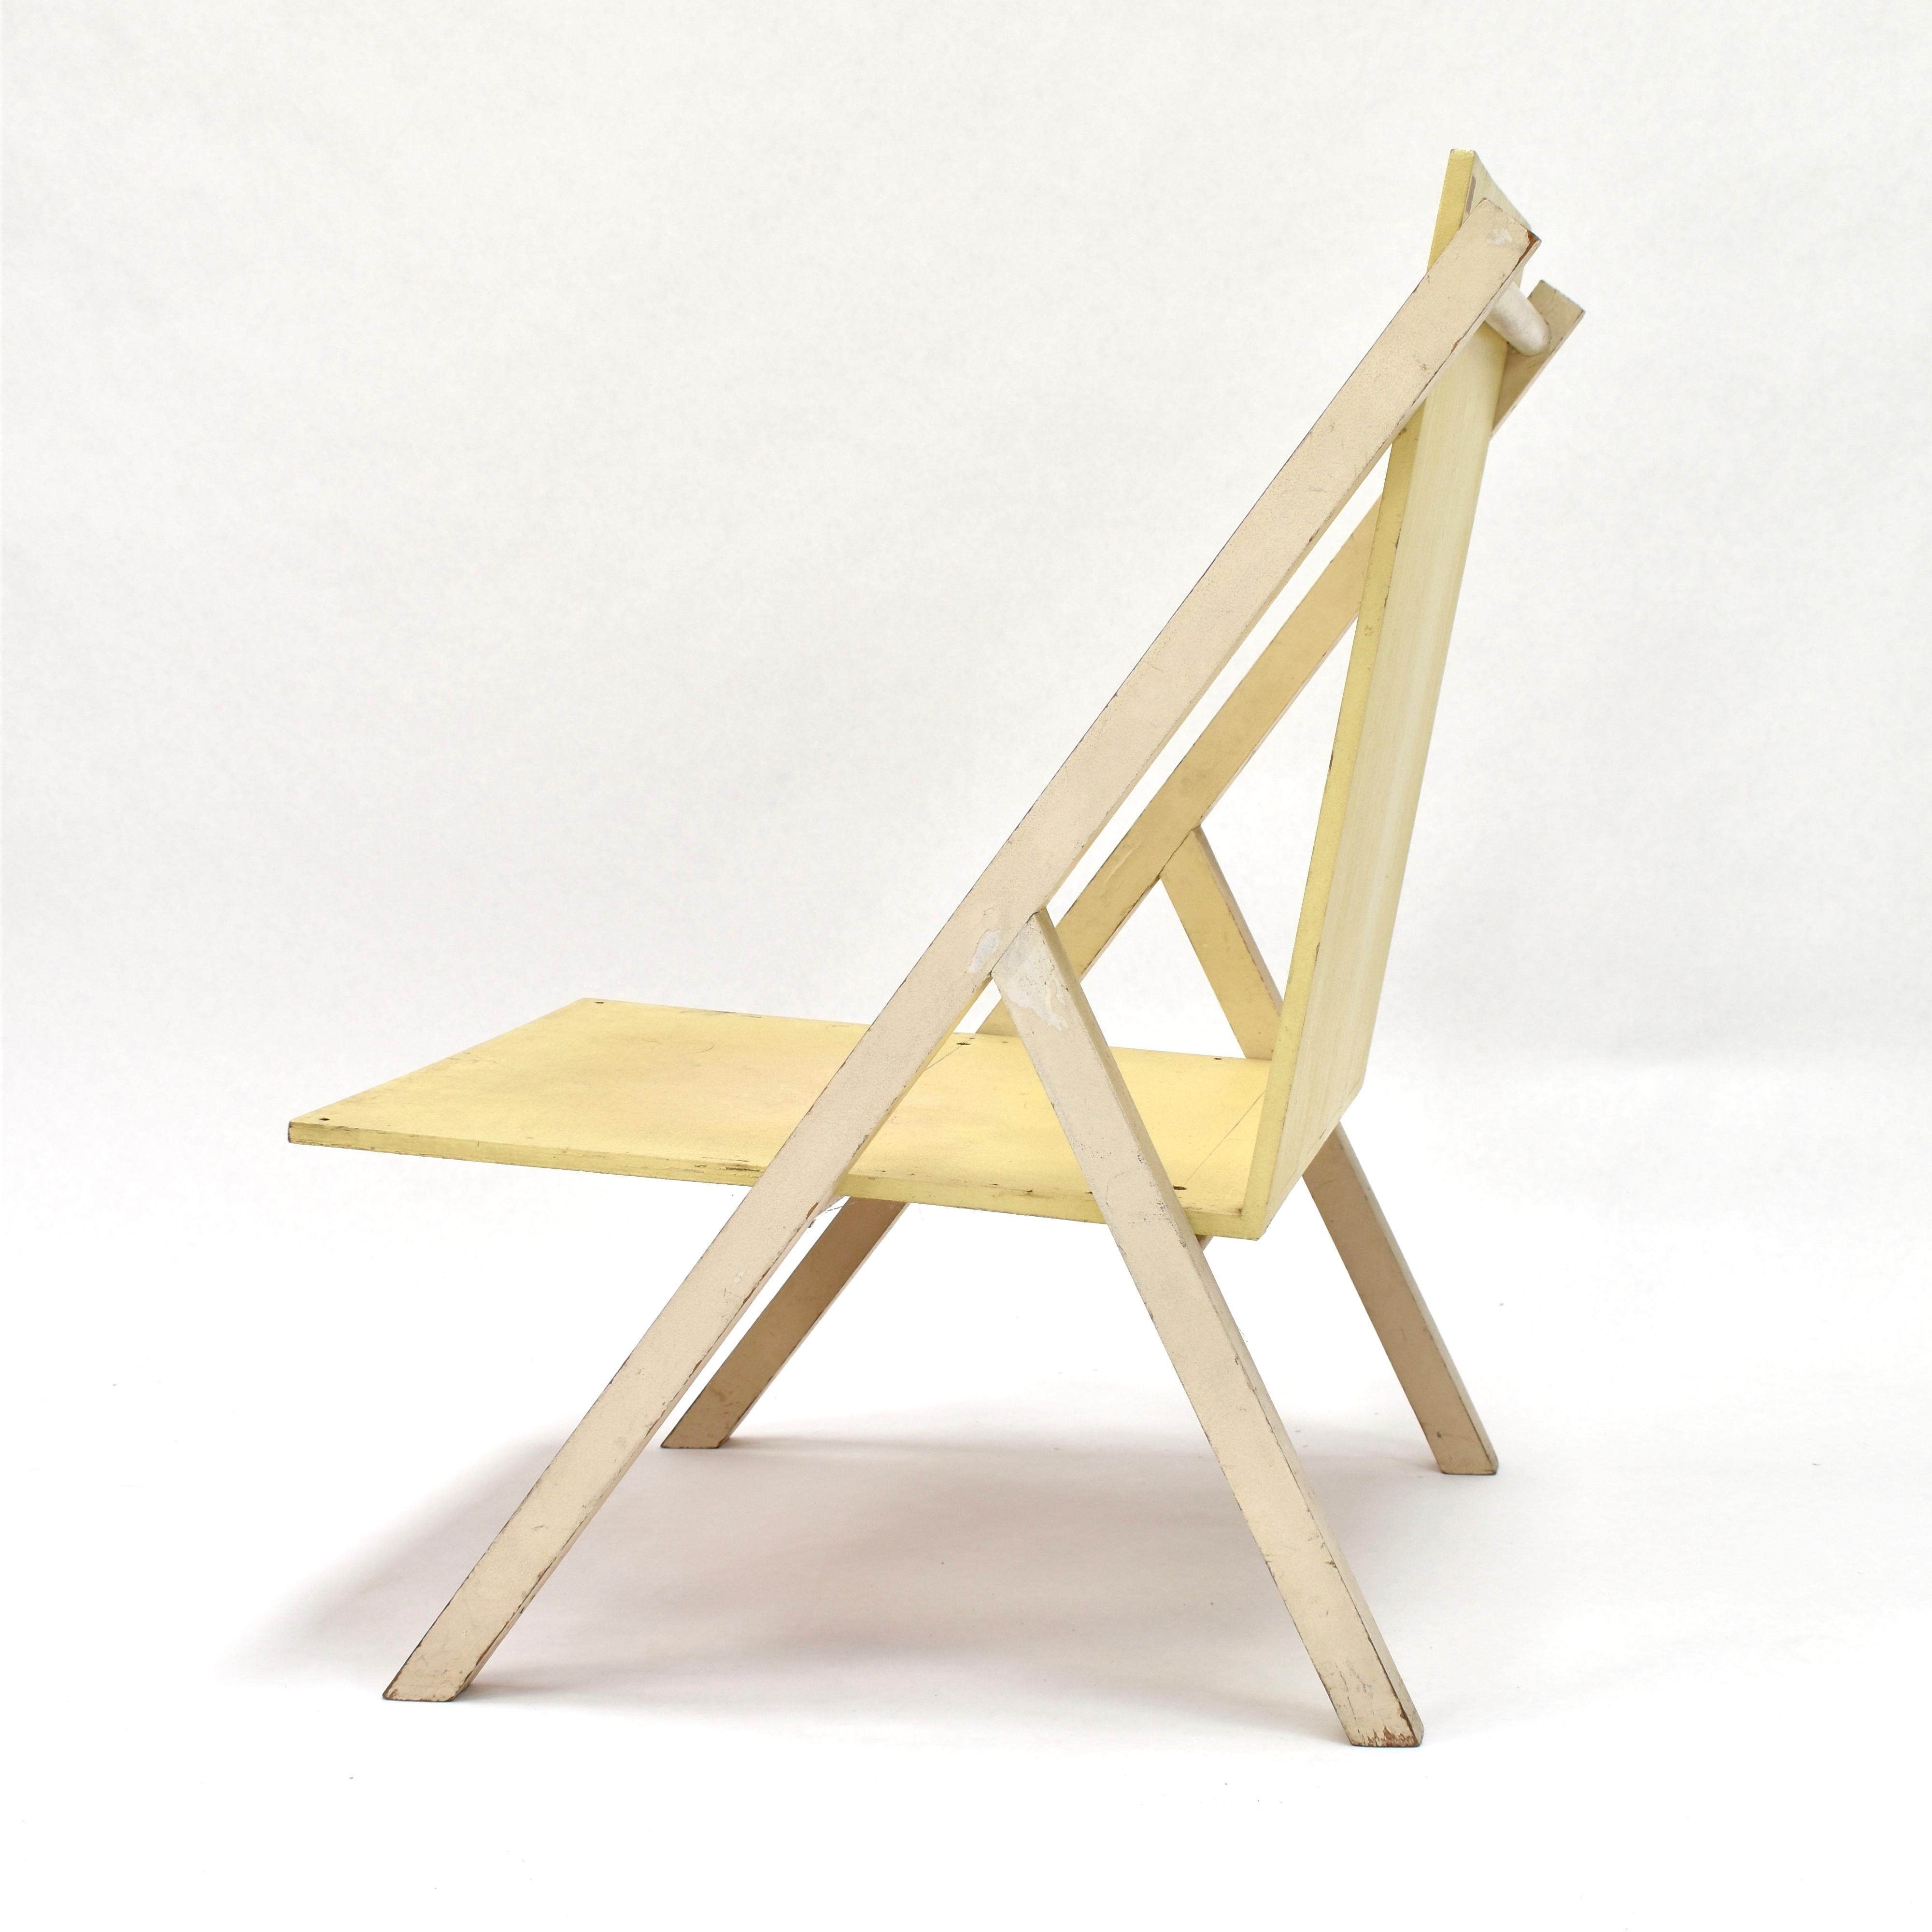 Ein Museumsstück! Prototyp für einen Salonstuhl von Gerrit Rietveld Jr. 1920 - 1961, Sohn des berühmten niederländischen Designers Gerrit Rietveld Sr. der zur Gruppe 'De Stijl' gehörte.
Ein ähnlicher Stuhl befindet sich in der Sammlung des